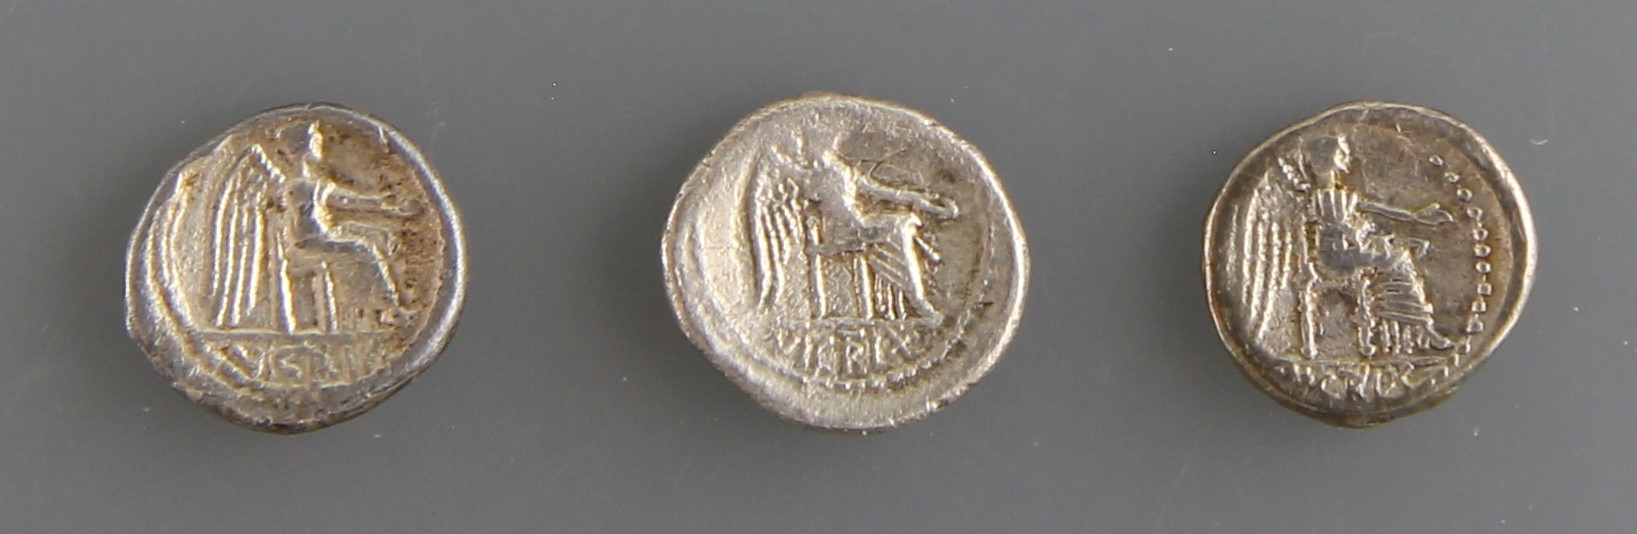 Römische Republik, M. Porcius Cato Uticensis (89 v. Chr.) - Image 2 of 2